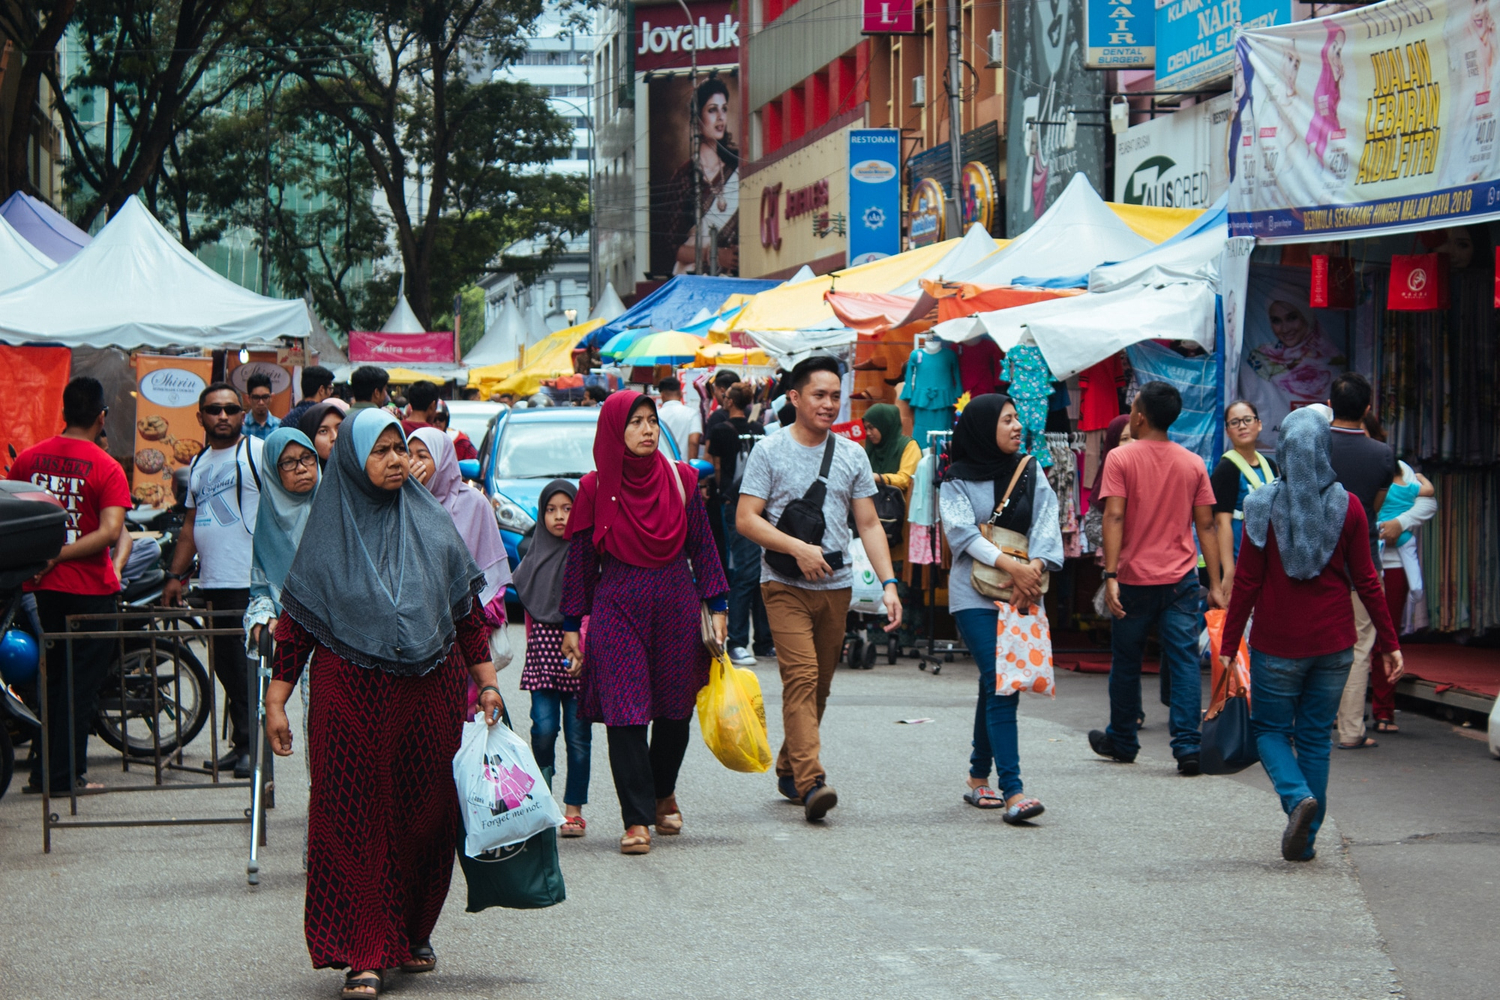 People in Kuala Lumpur shopping for Eid - known as Hari Raya in Malaysia